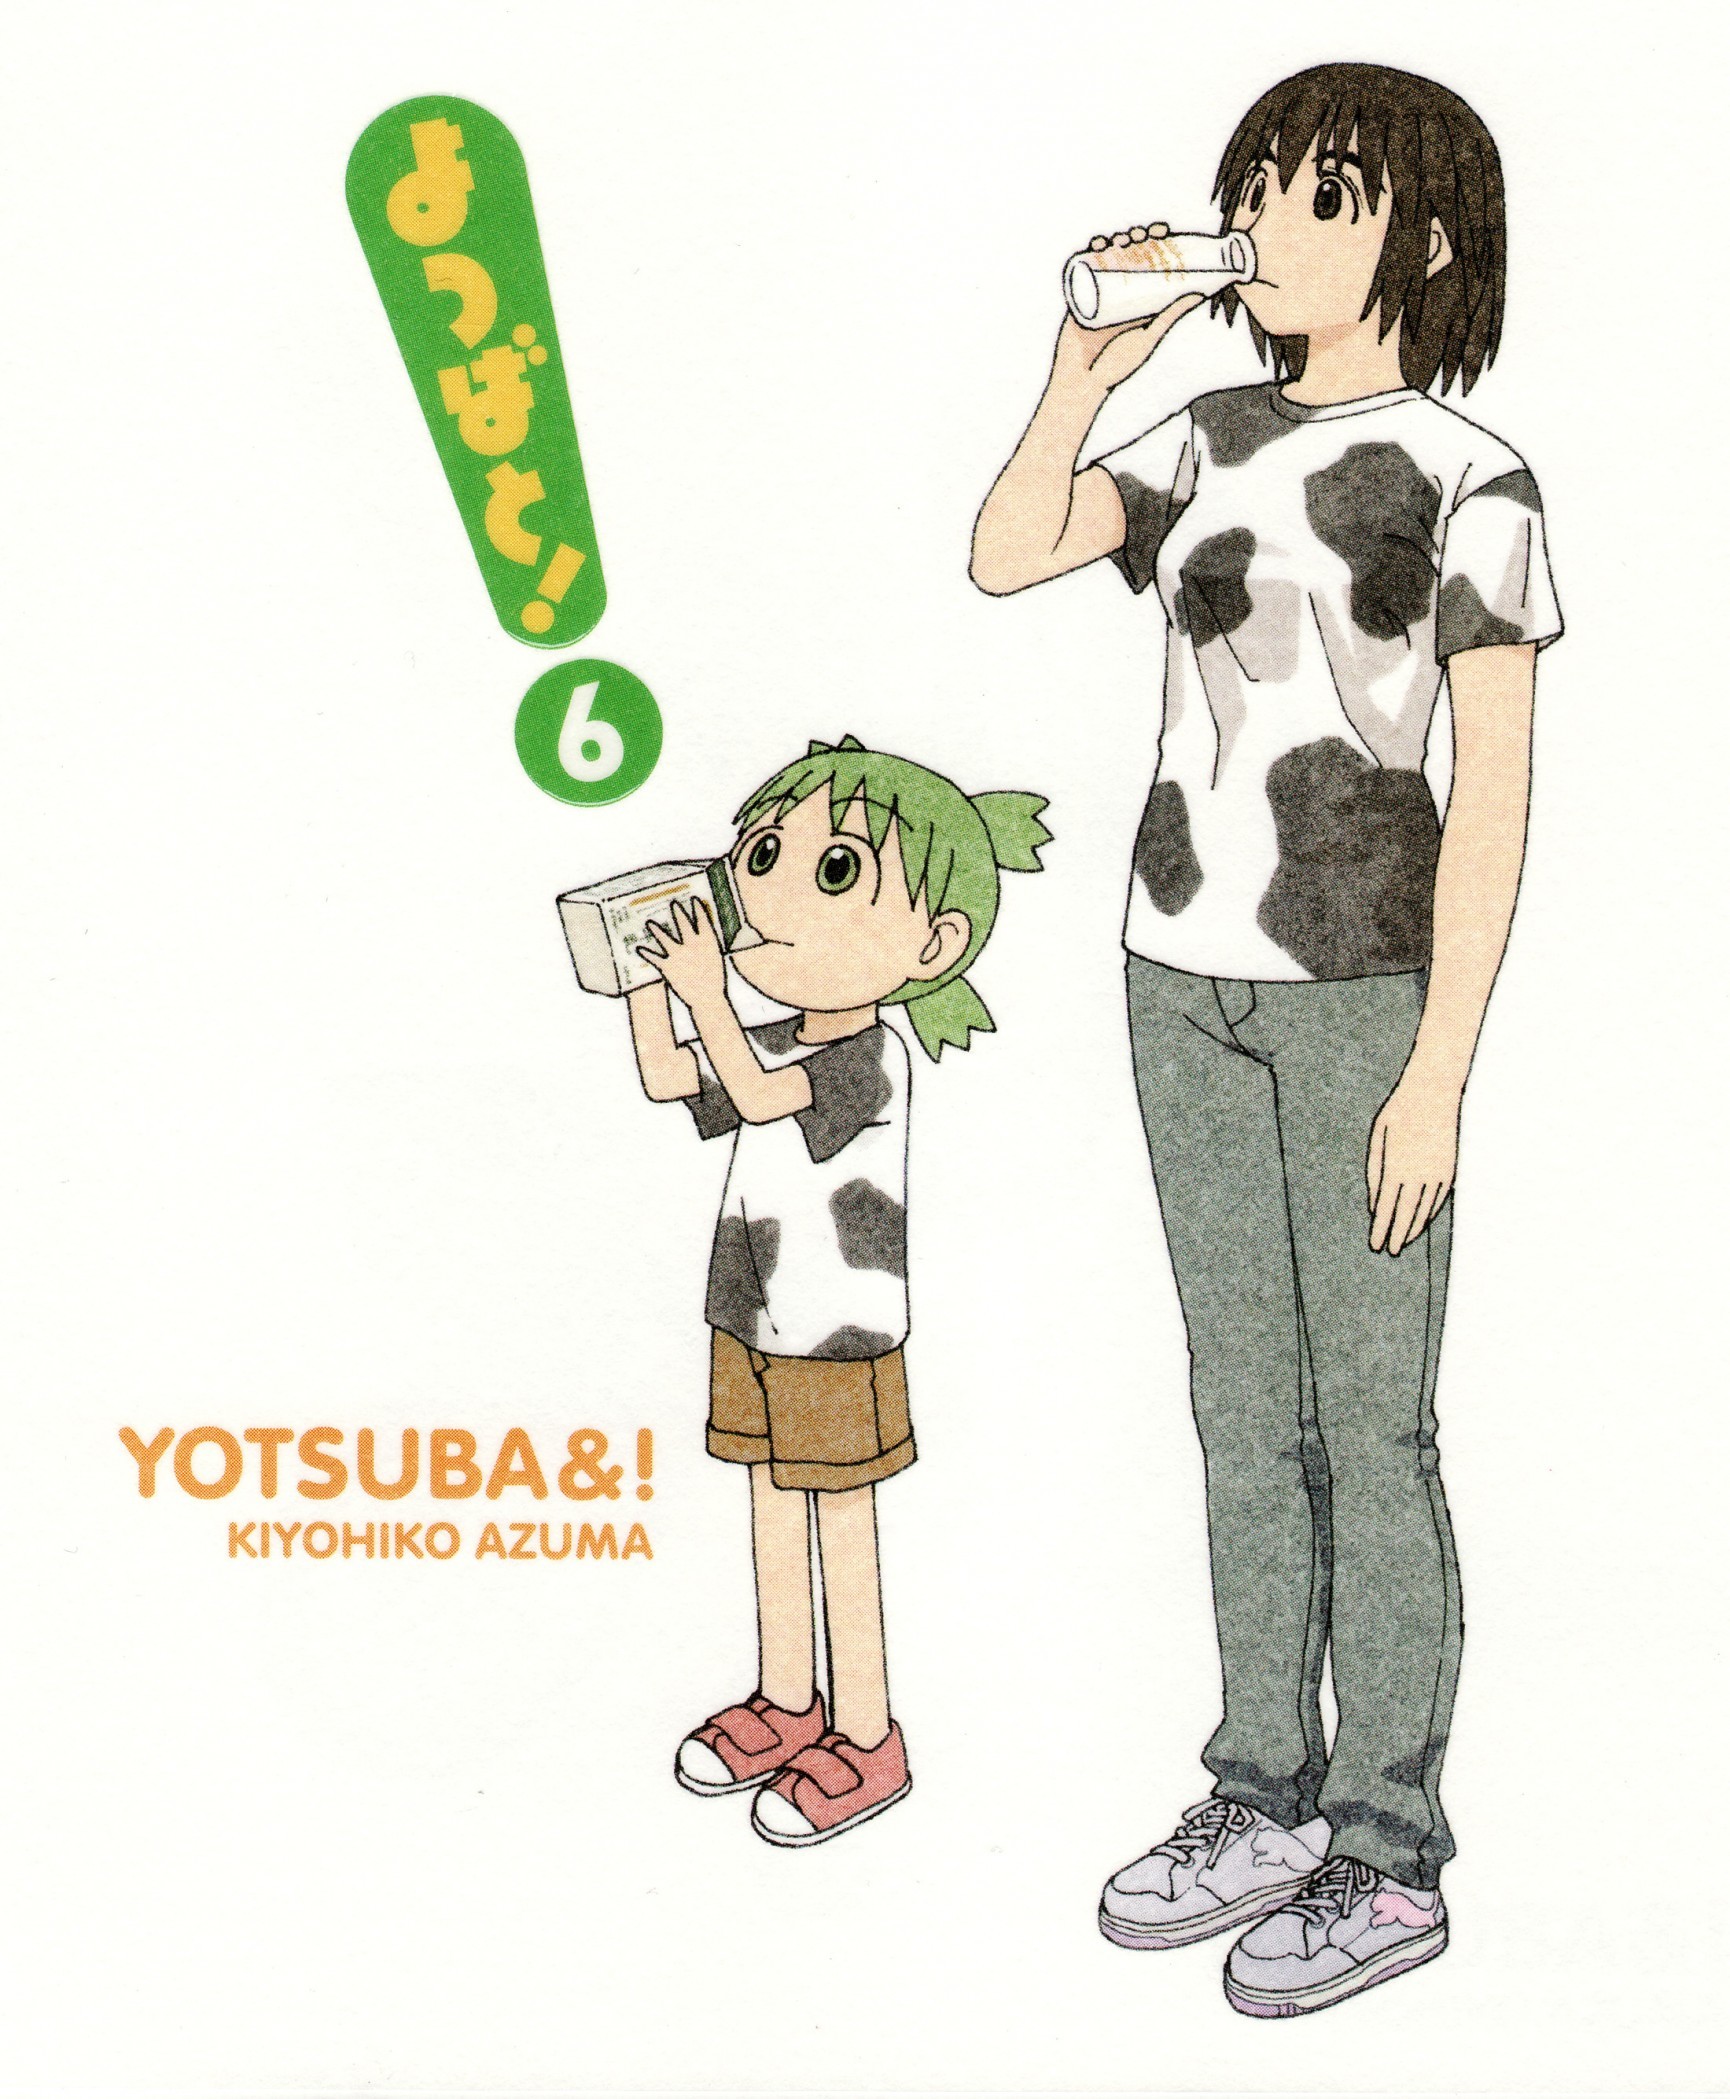 1730x2099 Yotsuba&! download Yotsuba&! image